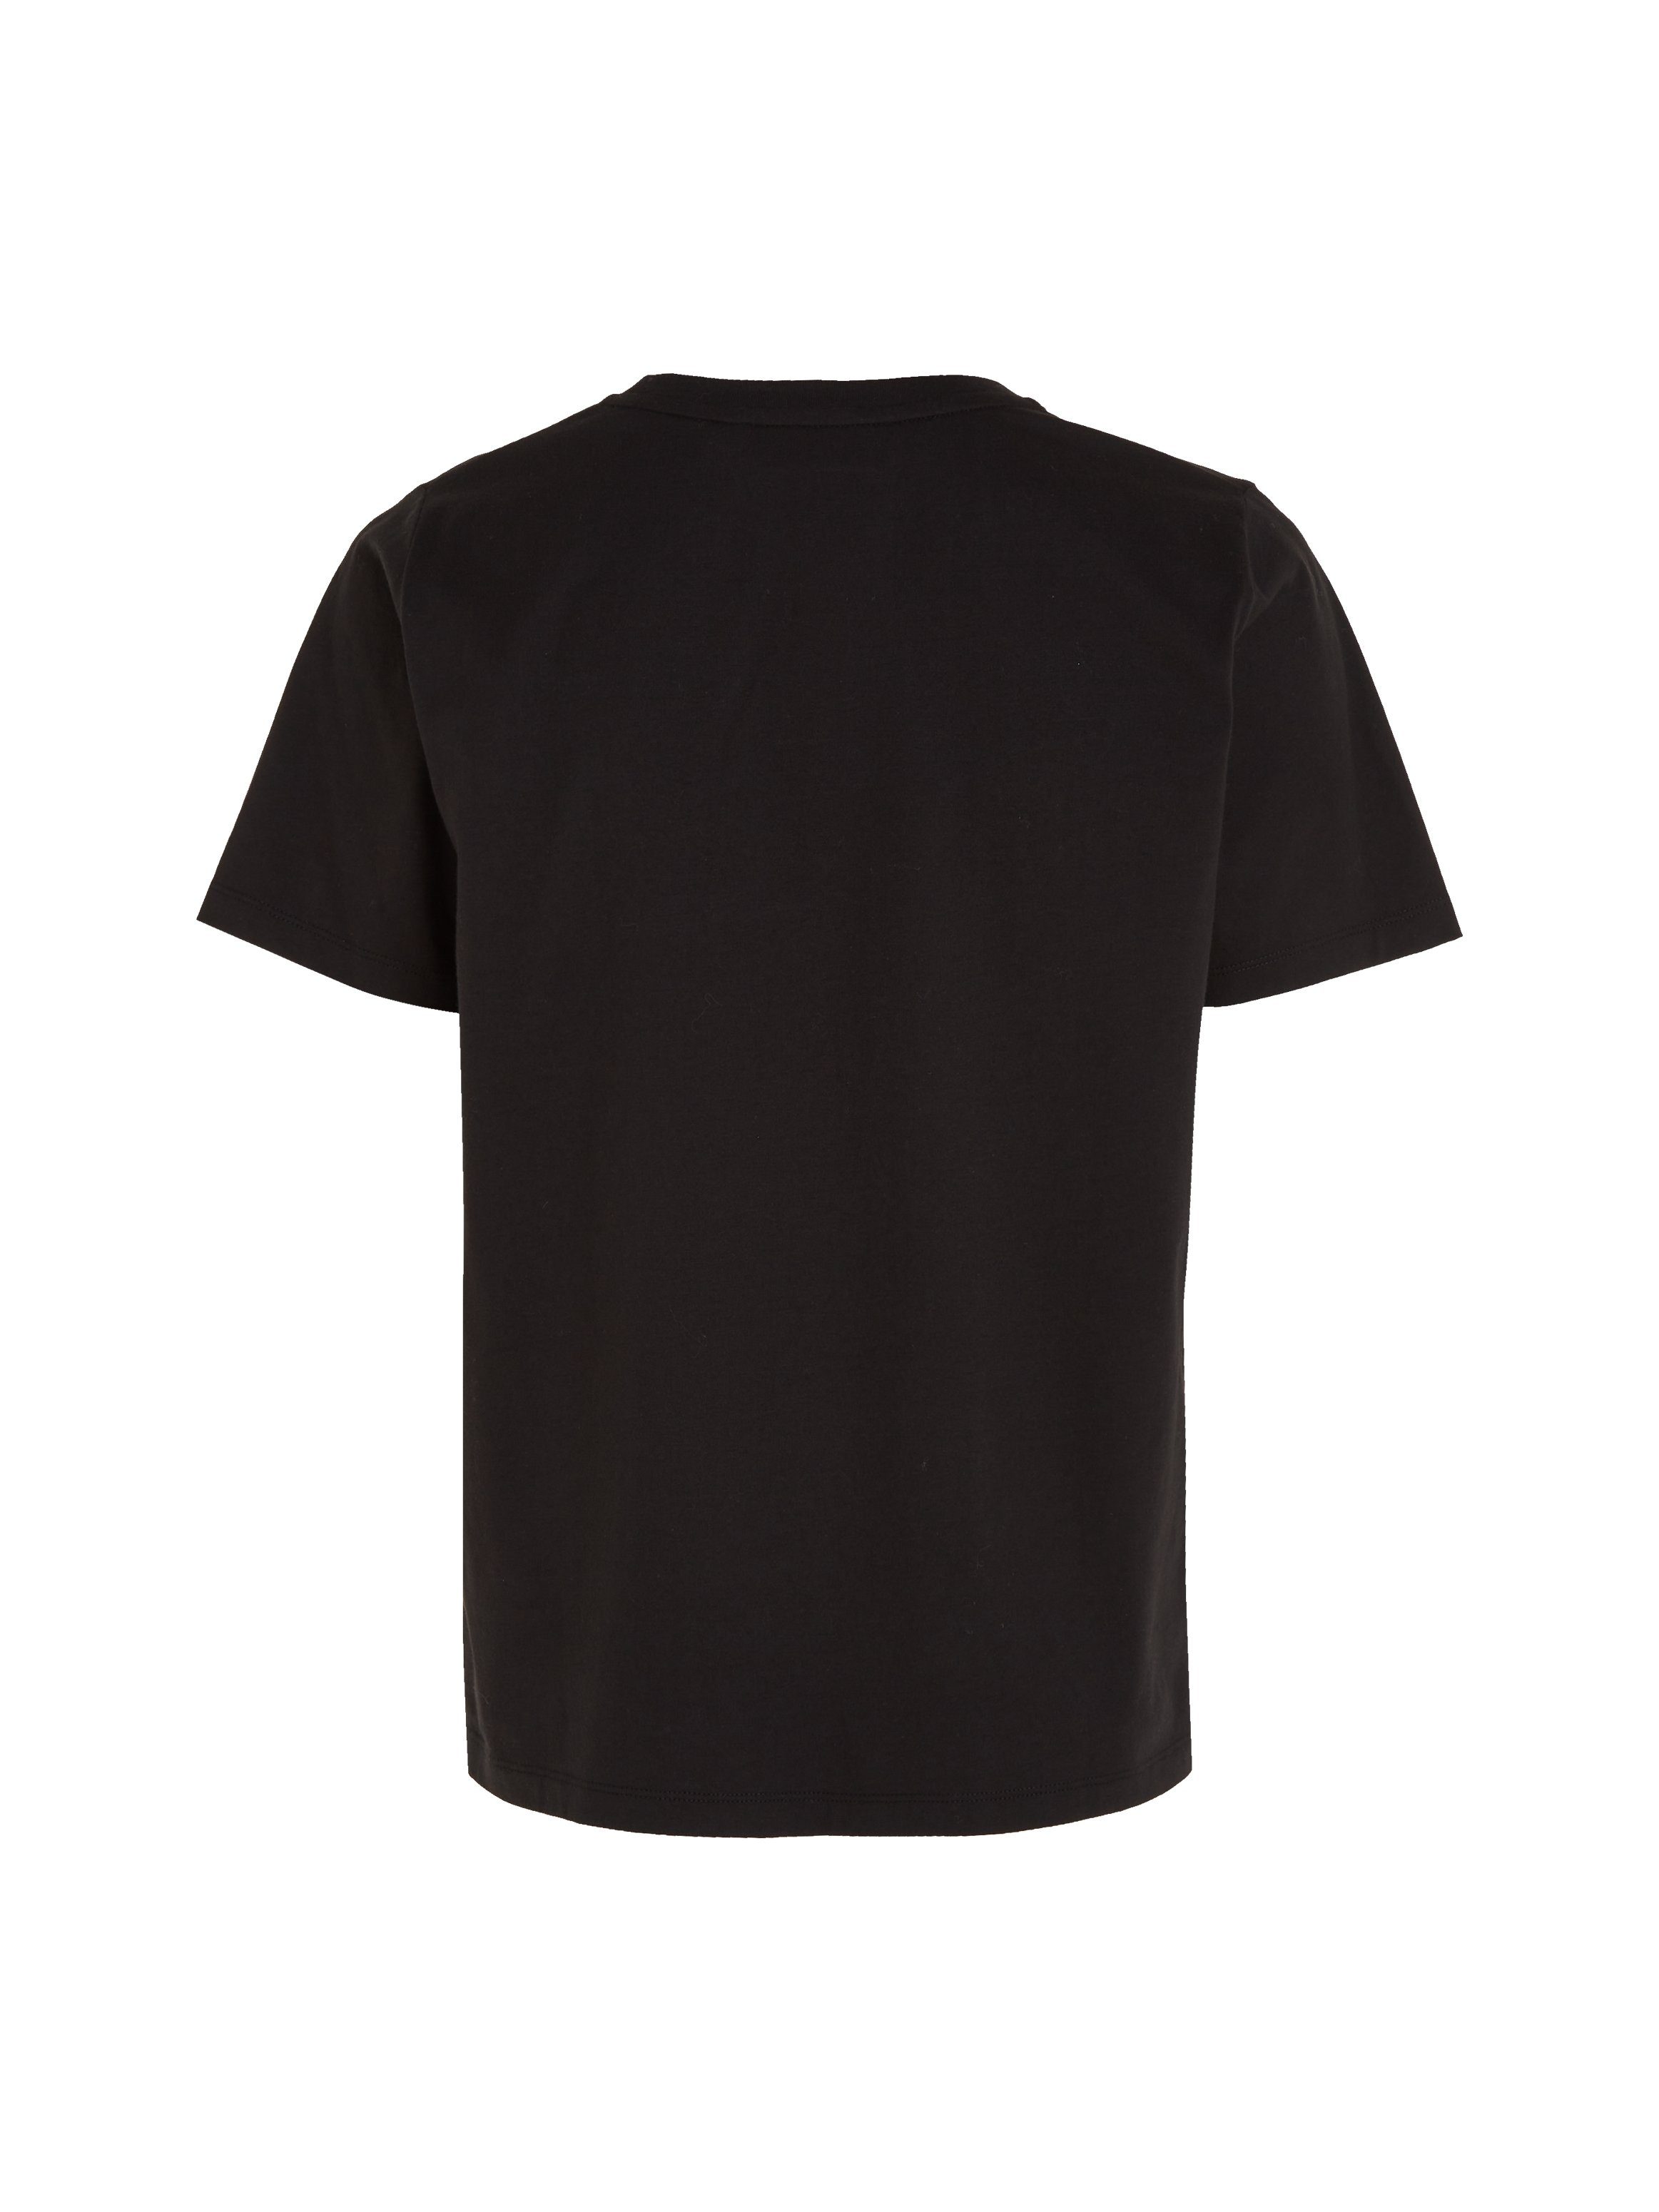 aus LOGO MICRO Calvin T-SHIRT Baumwolle T-Shirt reiner Ck-Black Klein